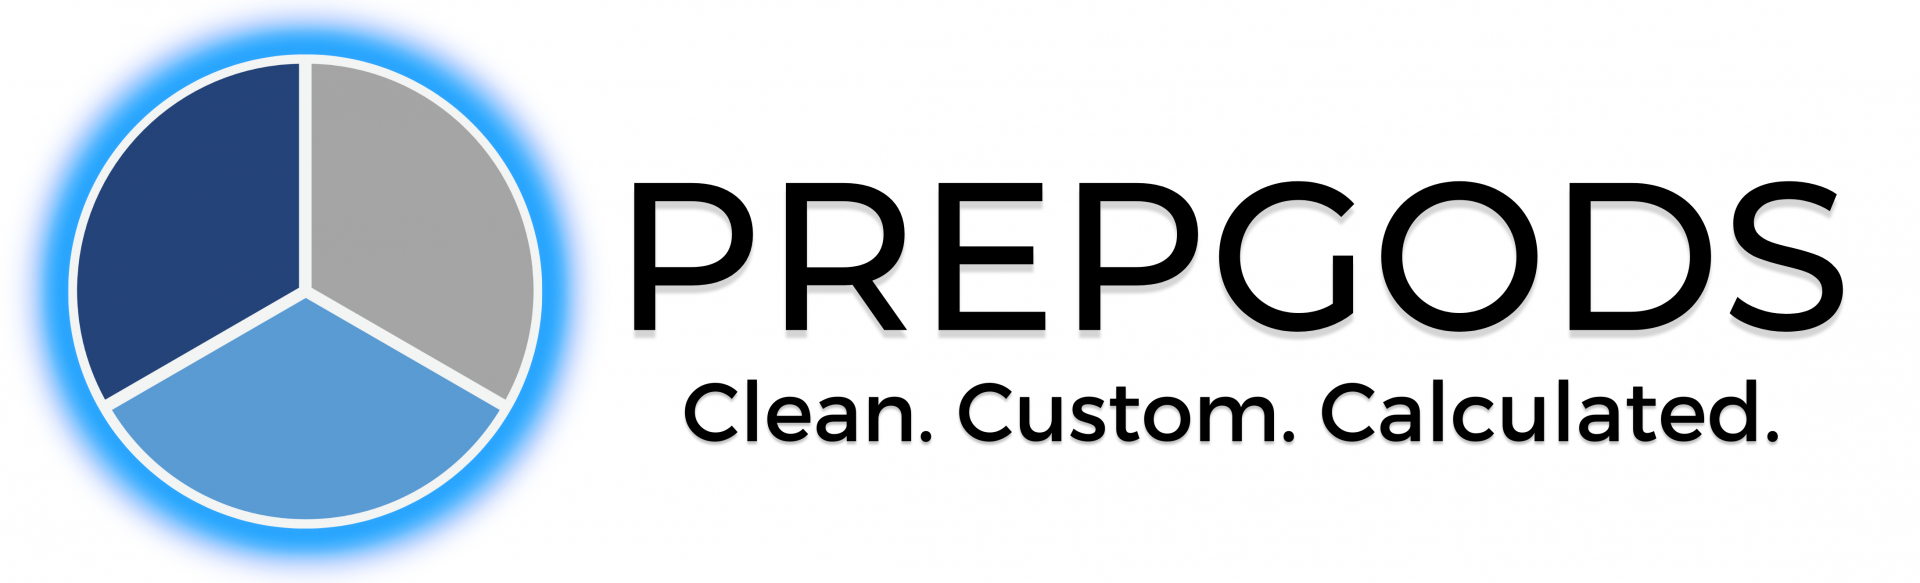 PREPGODS logo